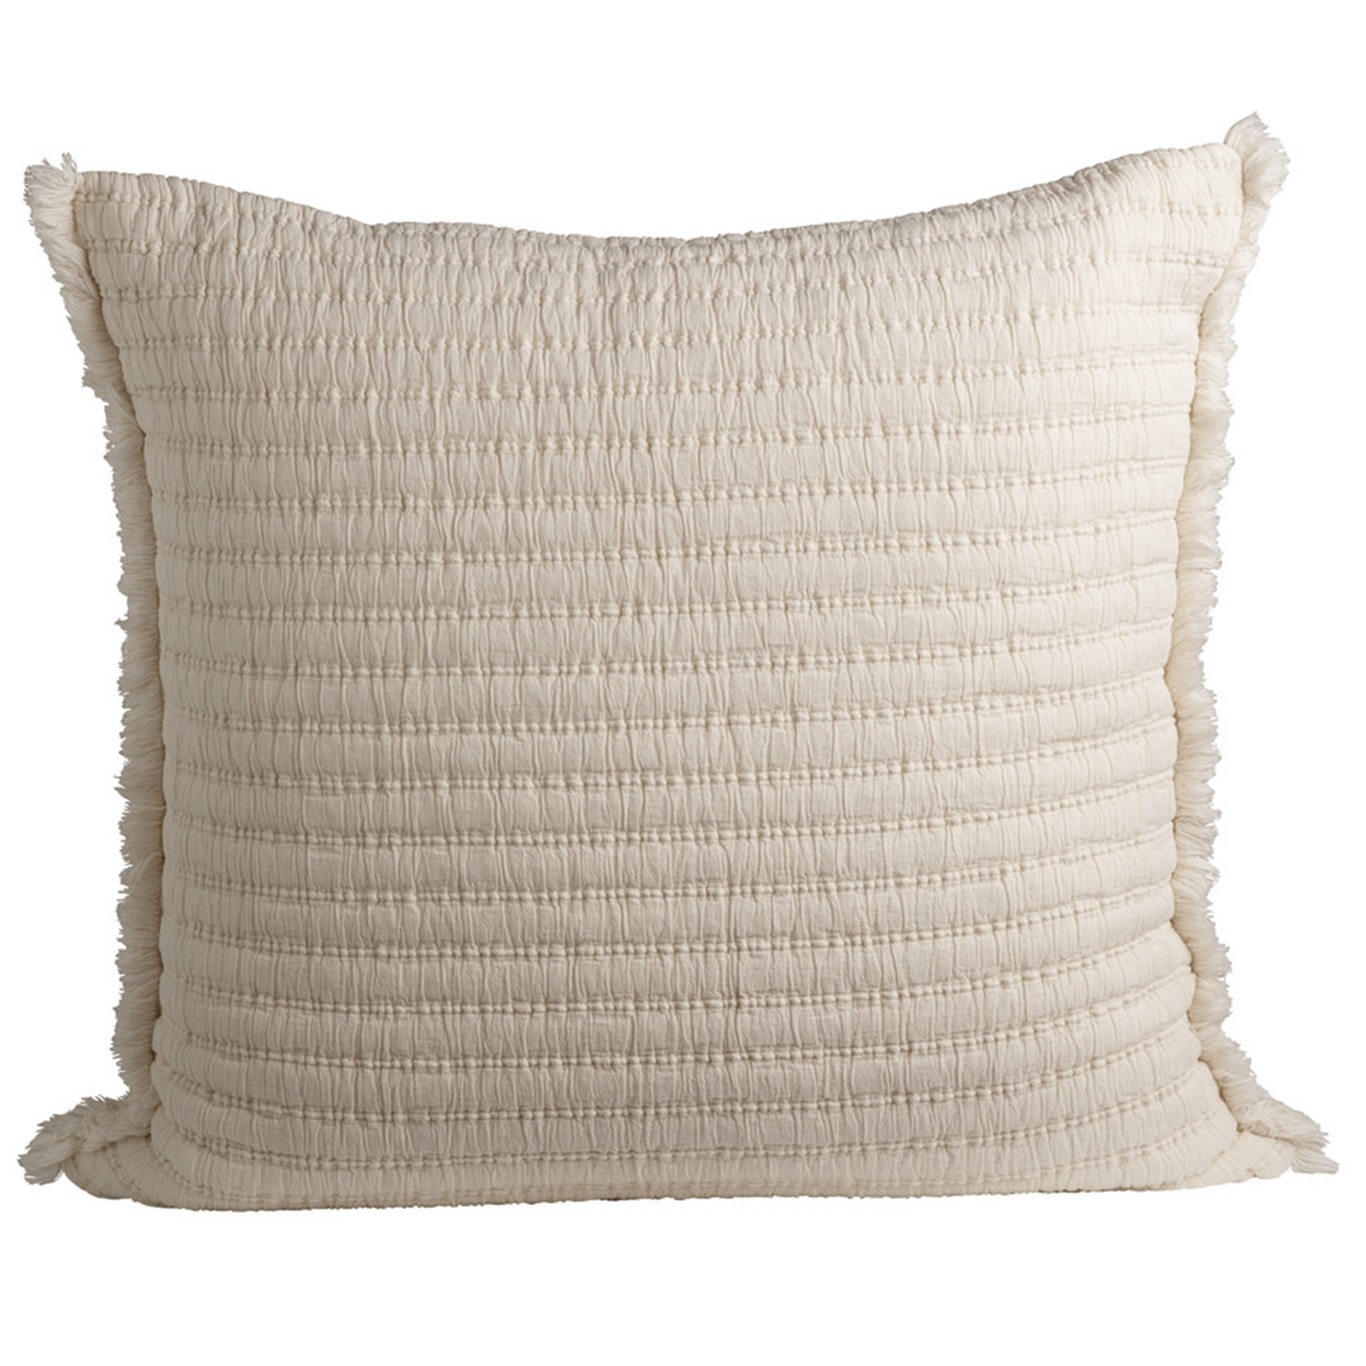 Everpearl Cushion Cover Cream, 60x60 cm